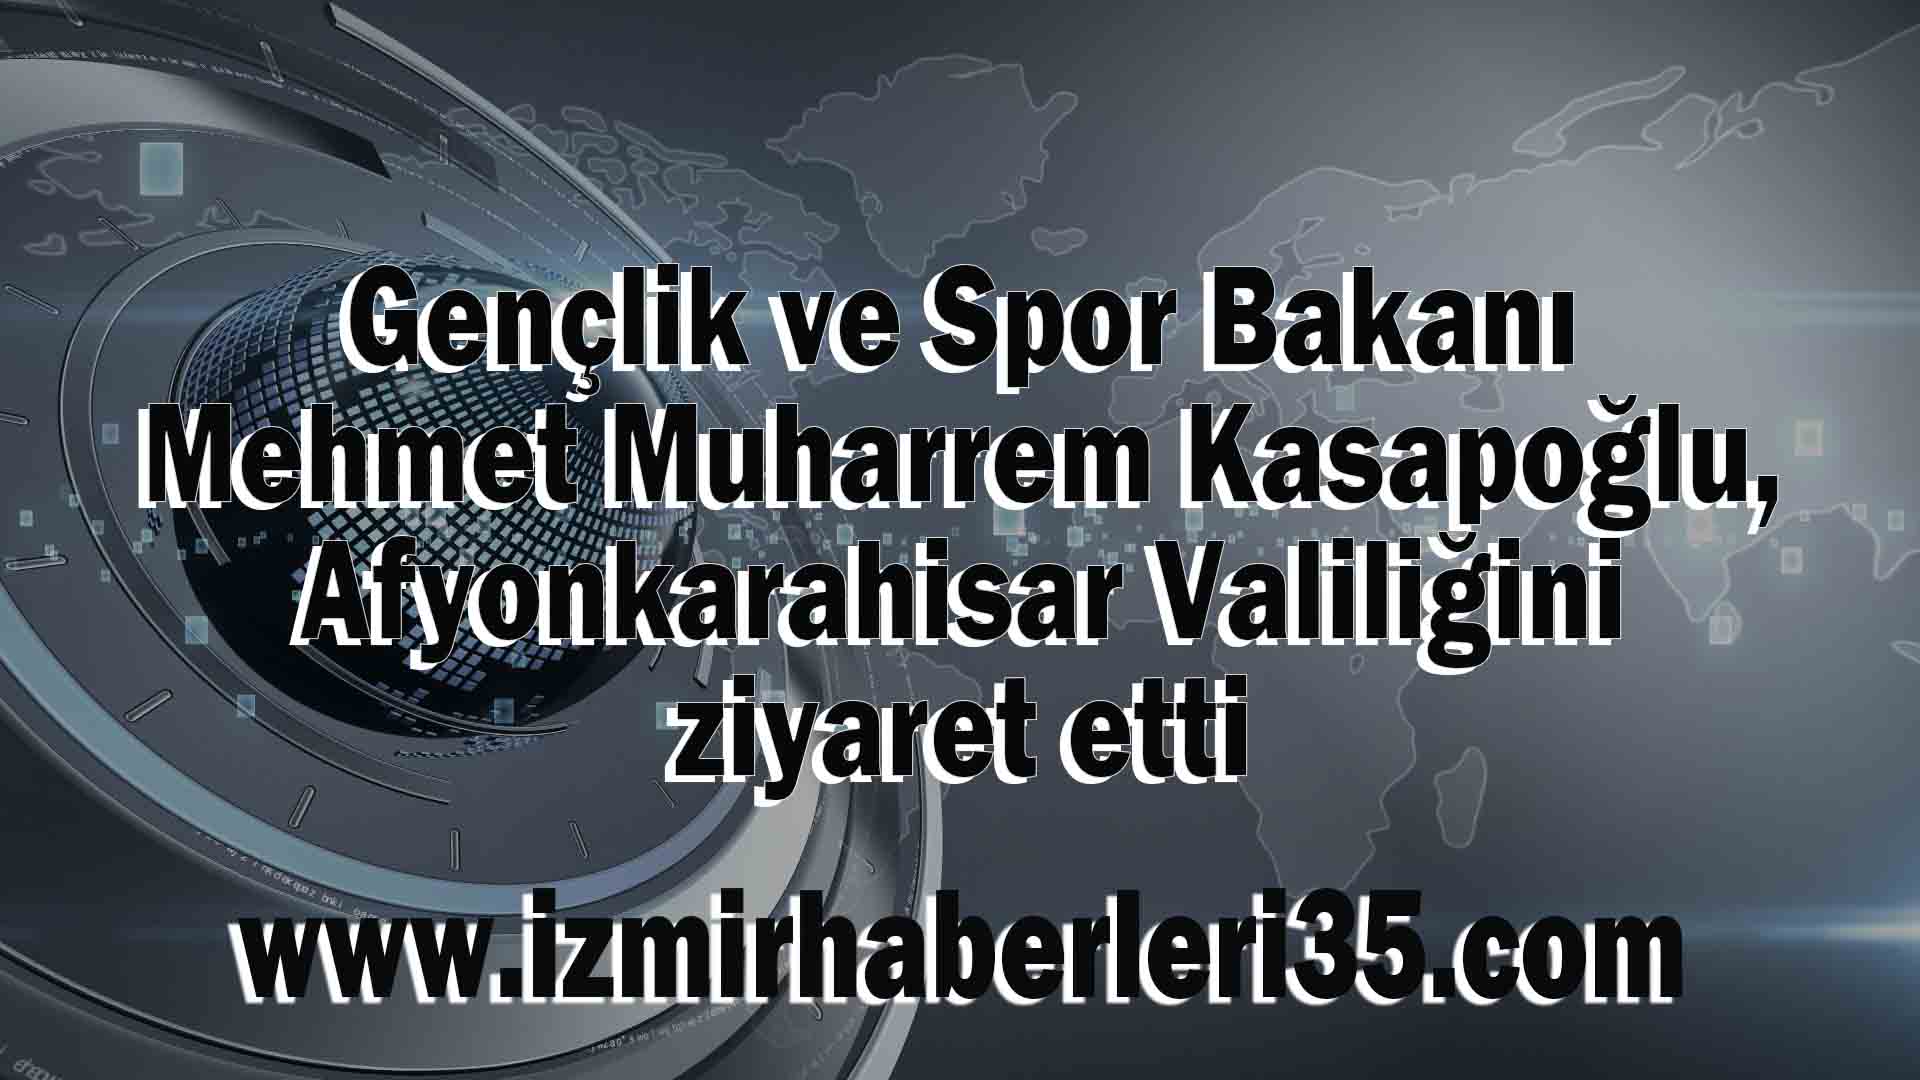 Gençlik ve Spor Bakanı Mehmet Muharrem Kasapoğlu, Afyonkarahisar Valiliğini ziyaret etti.